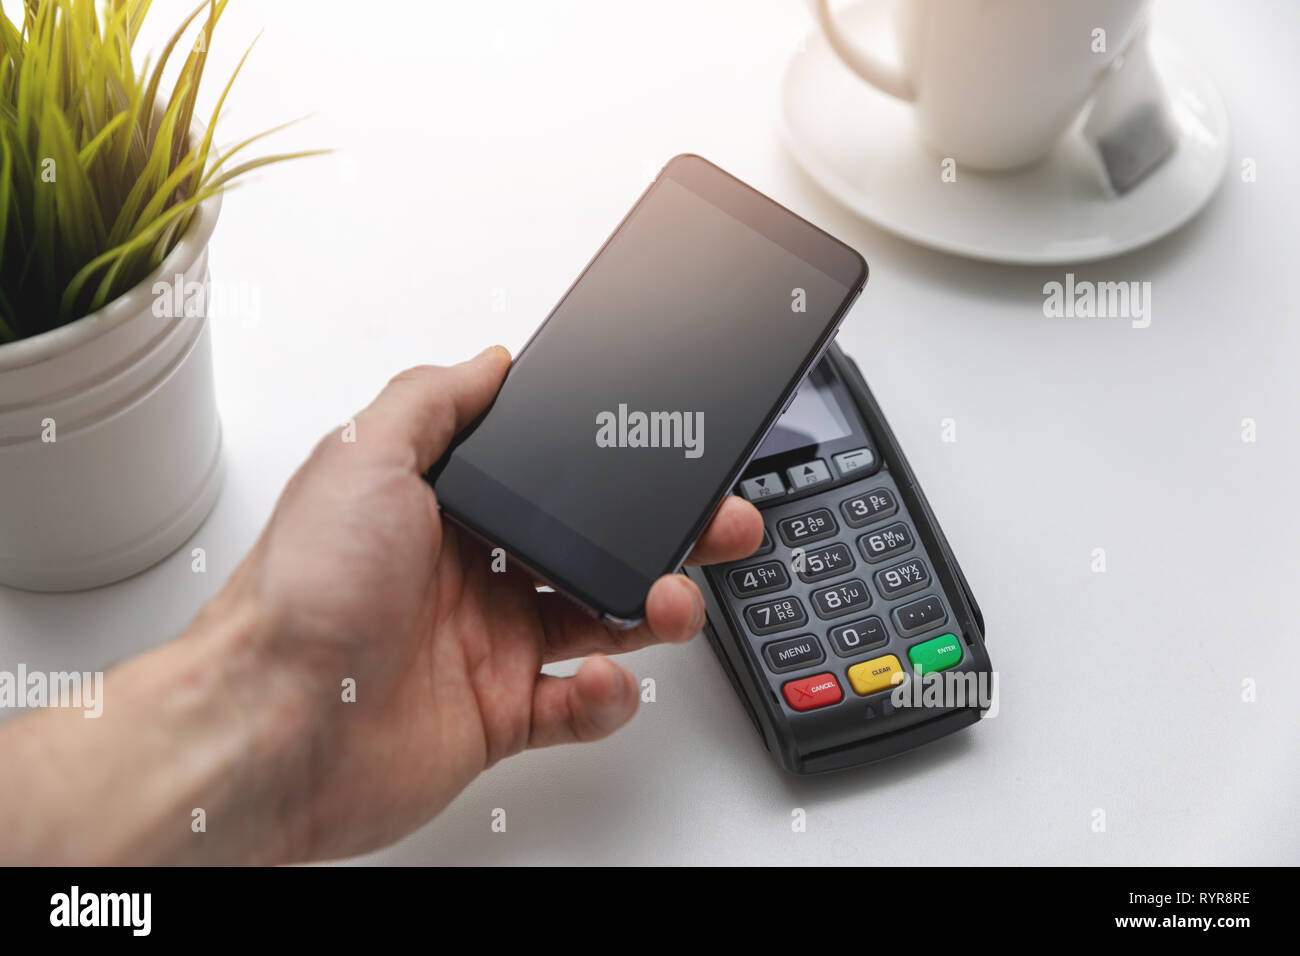 Les paiements sans contact NFC - hand holding phone terminal de paiement ci-dessus Banque D'Images